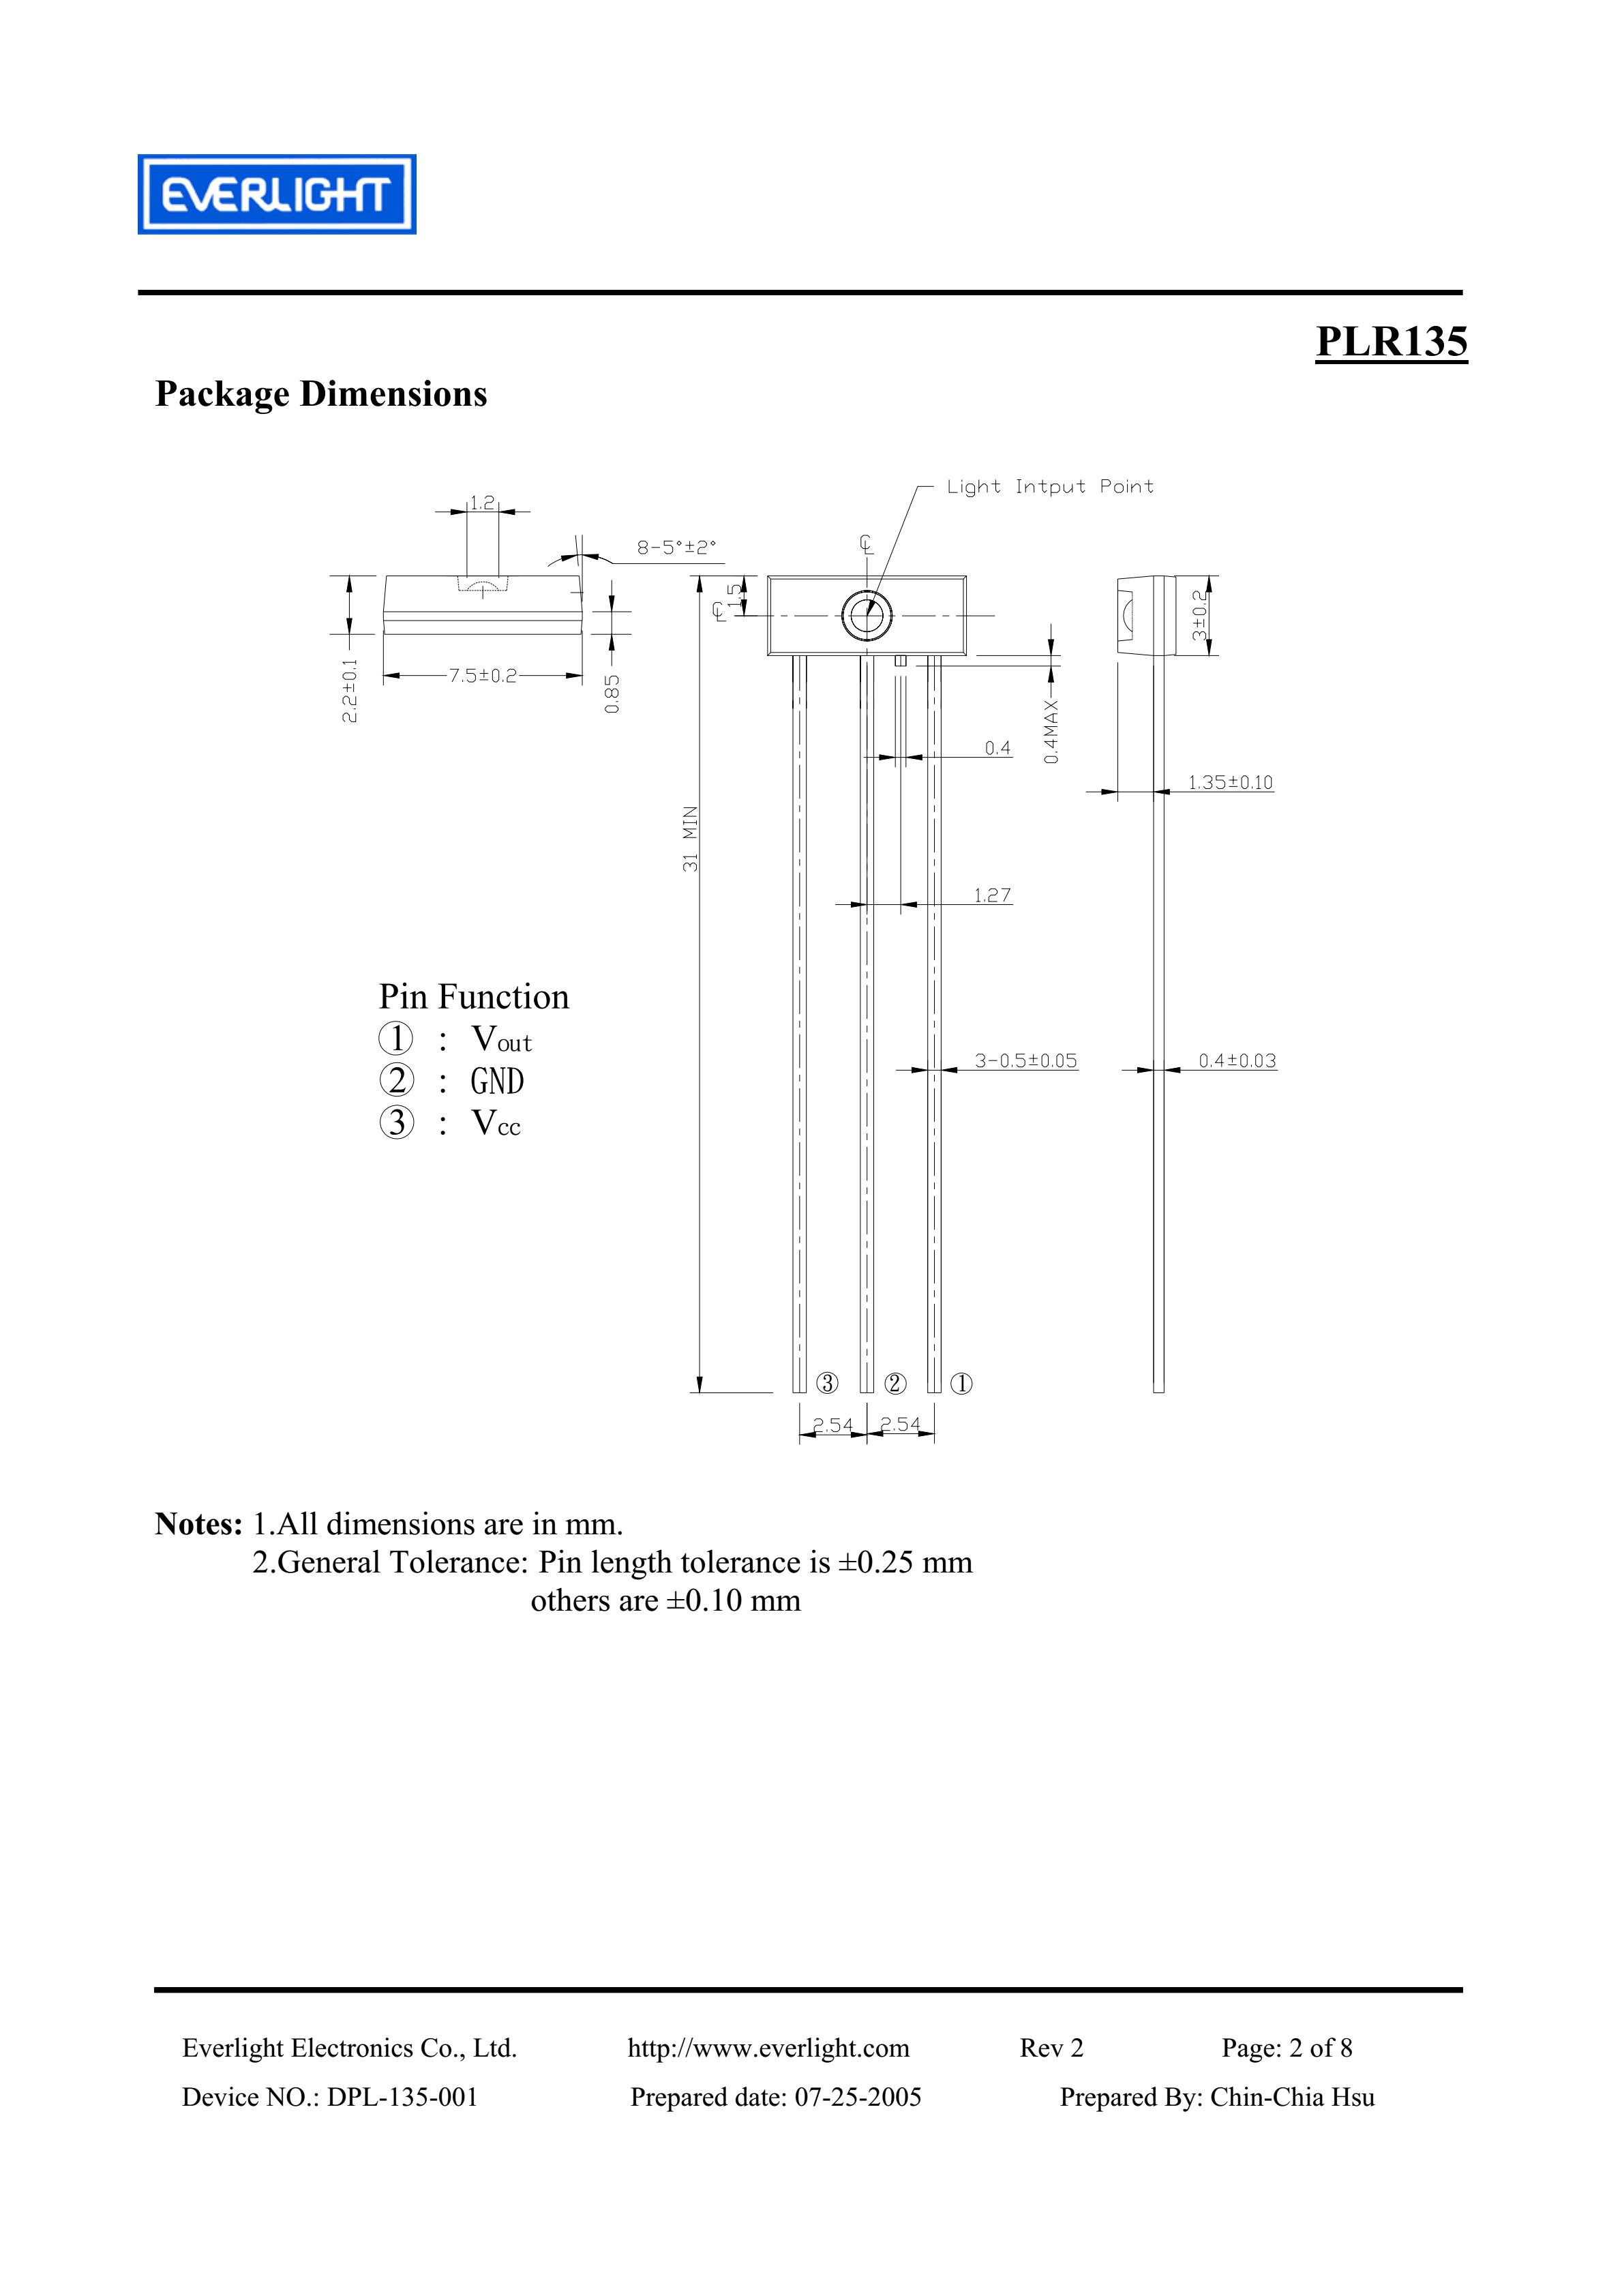 everlight PLR135 Photolink-Fiber Optic Receiver Datasheet